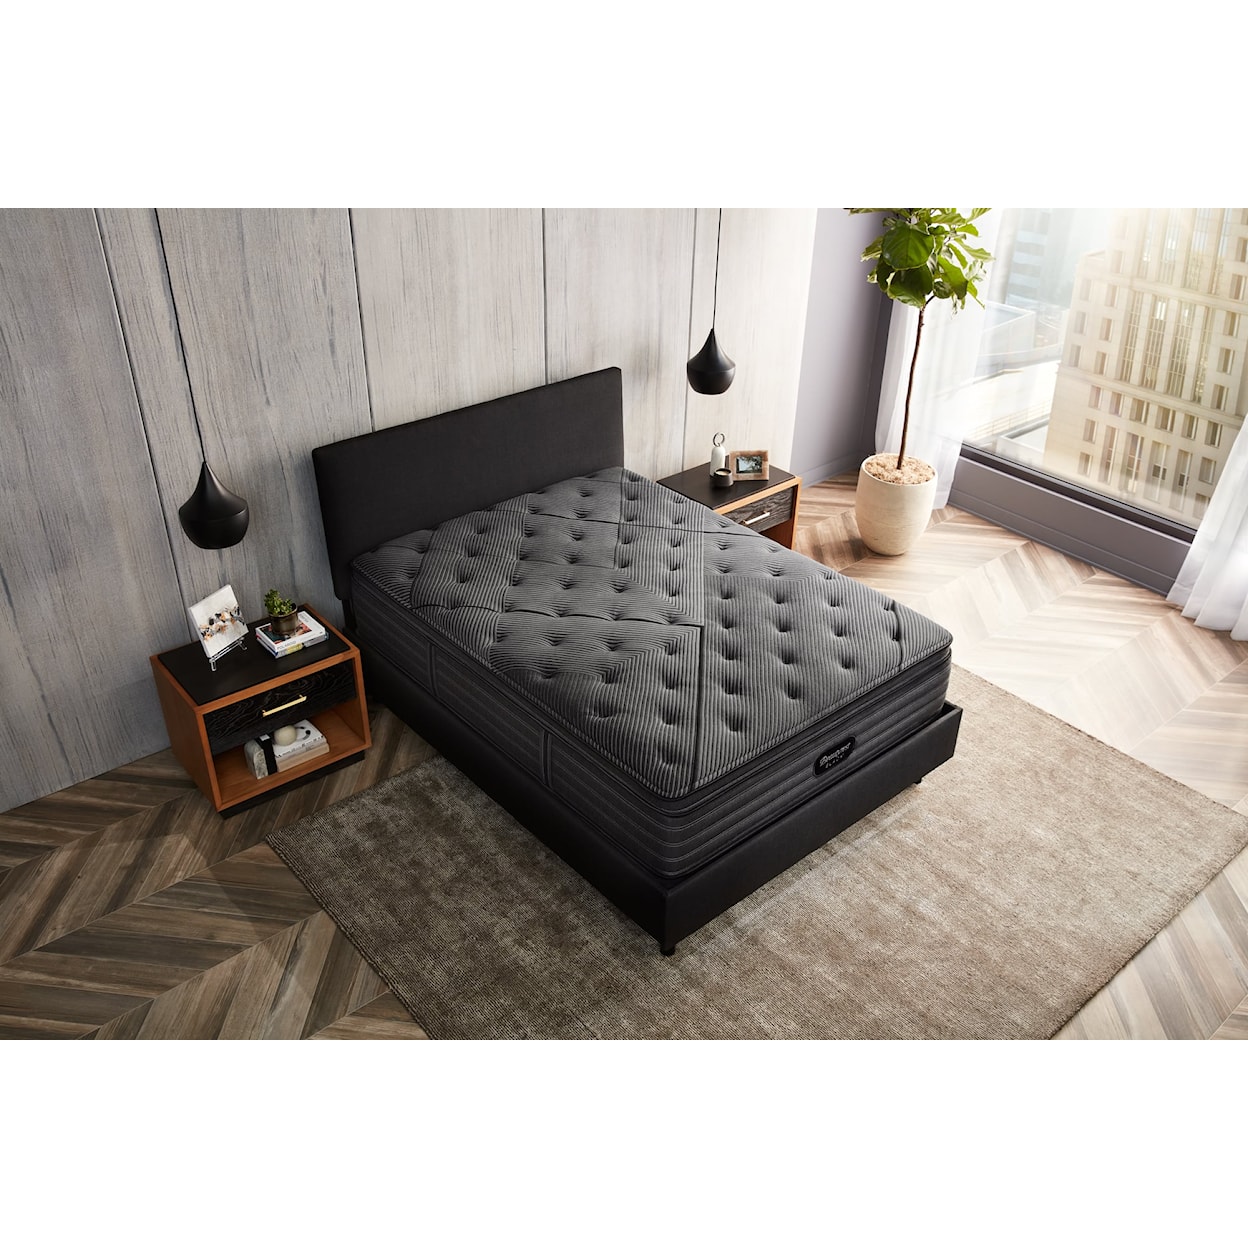 Beautyrest Beautyrest® Black L-Class 14.5" Plush Pillow Top Mattress - Twin XL